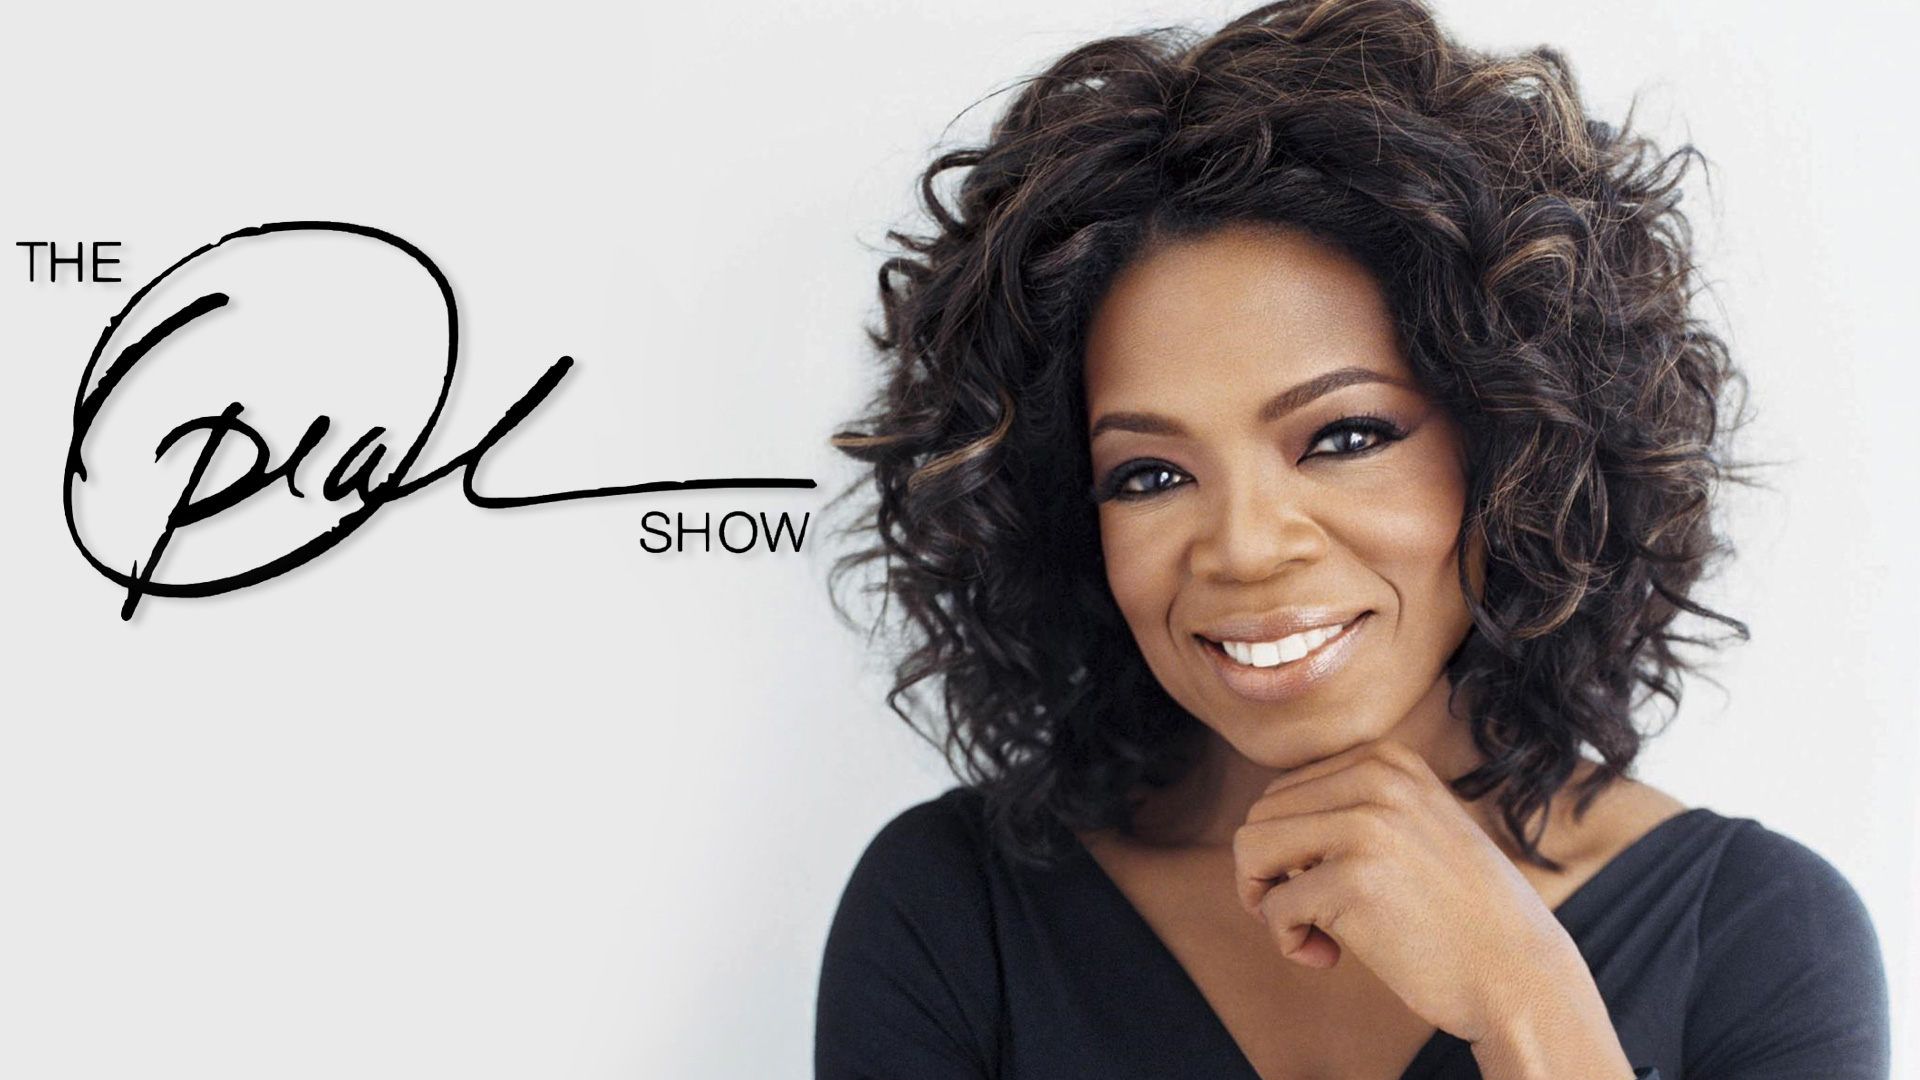 the-oprah-winfrey-show-episodes